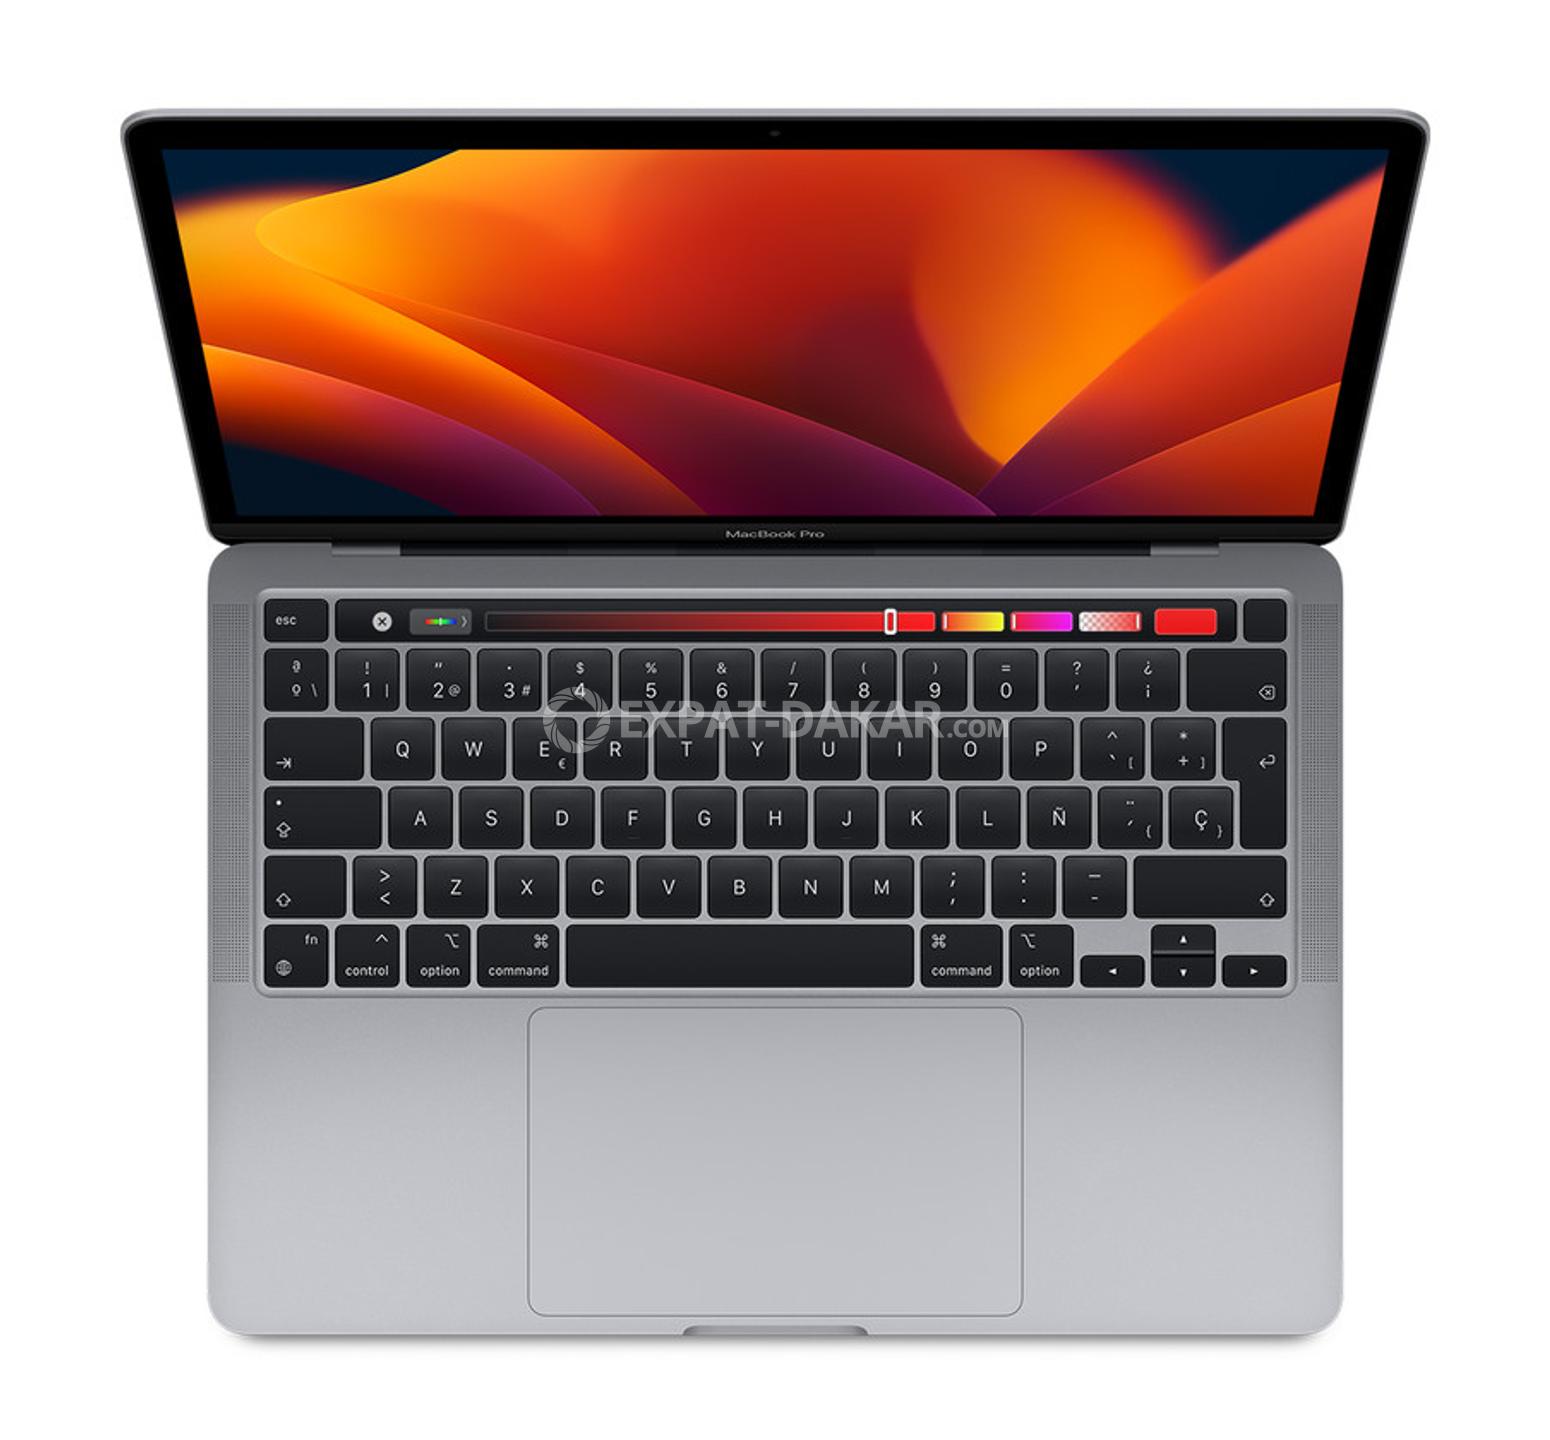 Chargeur MacBook Pro, 61W Chargeur USB C pour MacBook Pro - Dieuppeul